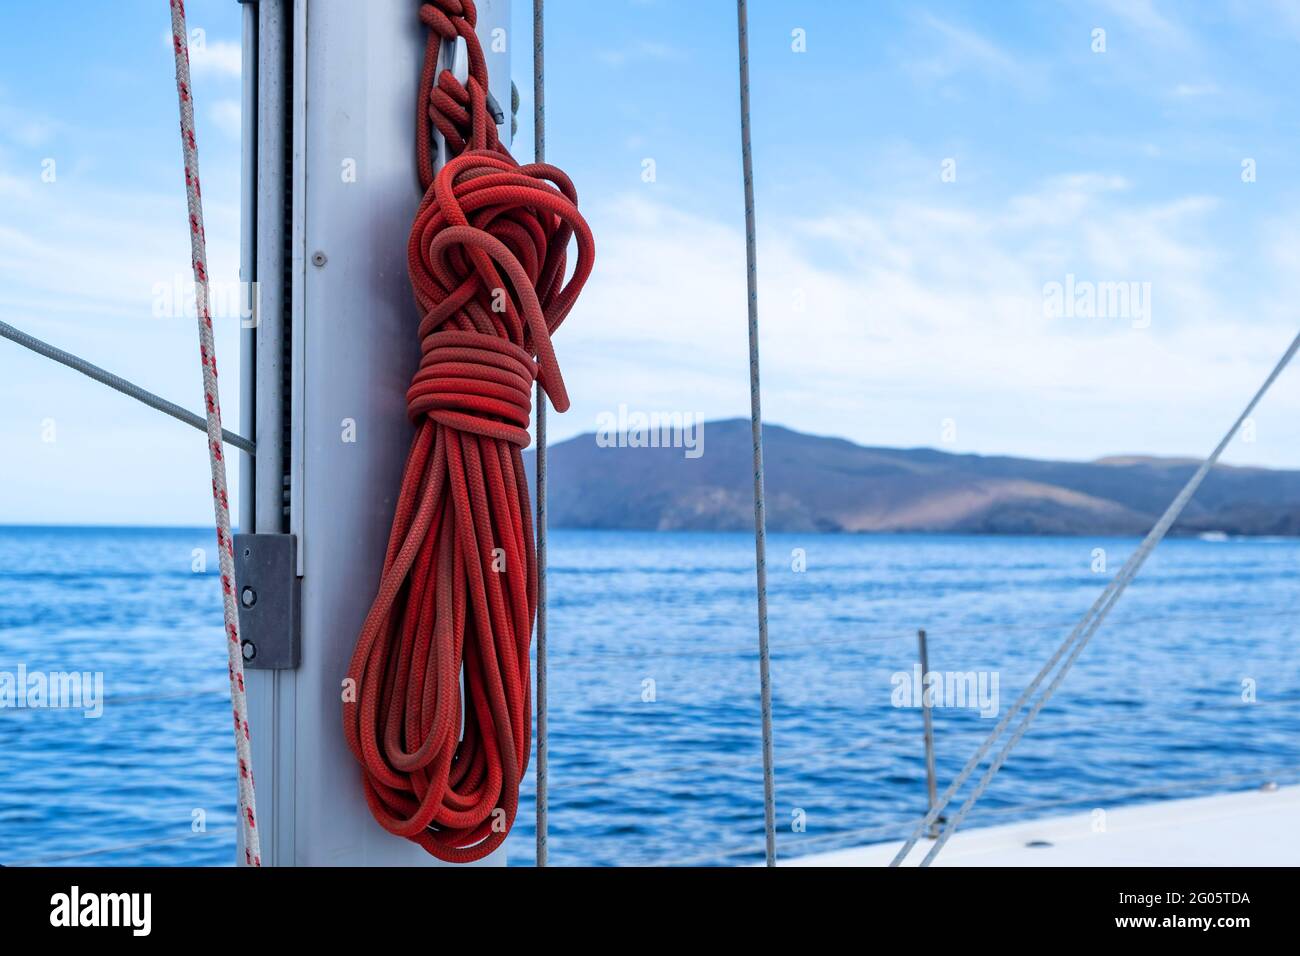 Festmachen Seile auf dem Segelboot, verwischen Seestücke Hintergrund. Rotes Segelseil auf dem Schiffsmast. Nahaufnahme, Platz kopieren. Segelbootkreuzfahrkarte Stockfoto